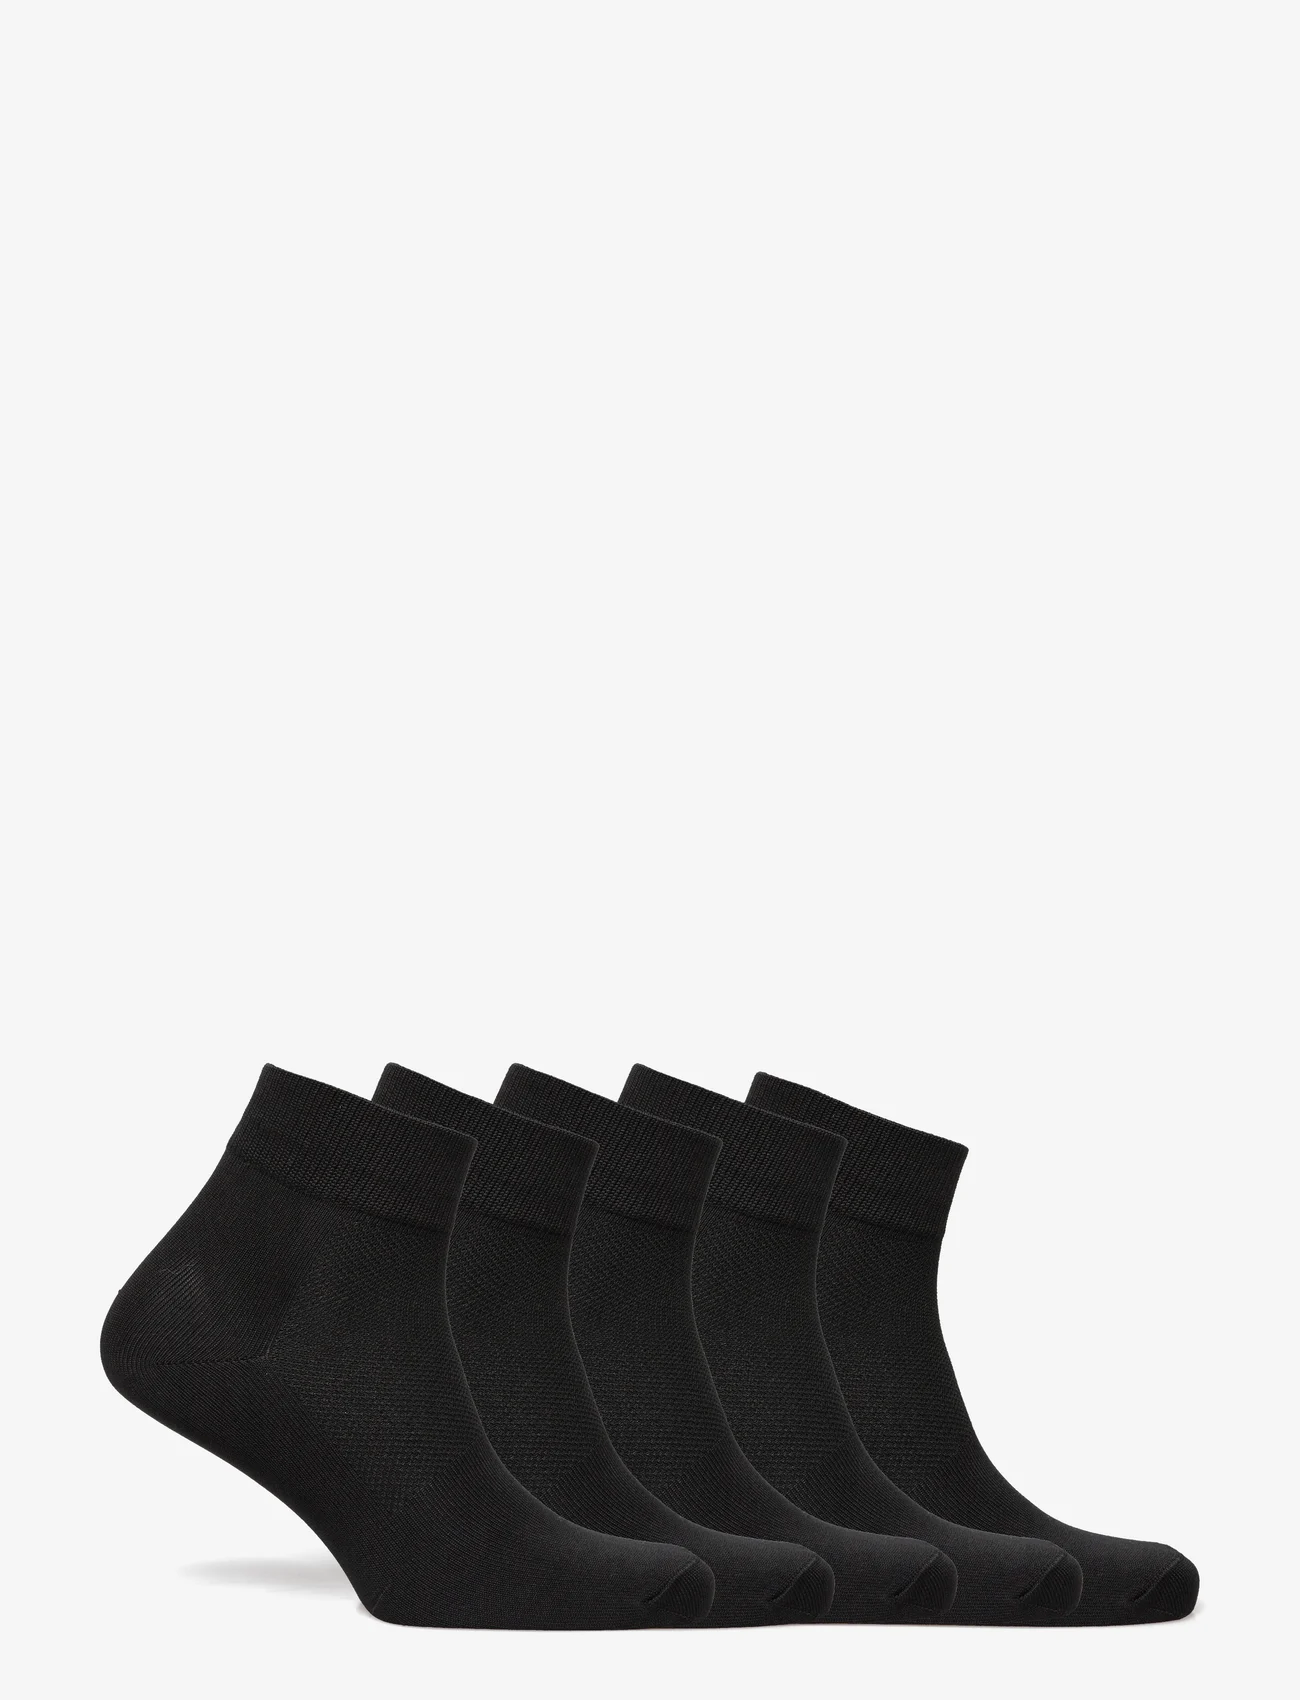 ZEBDIA - 5-PK Basic Running Socks - laveste priser - black - 1